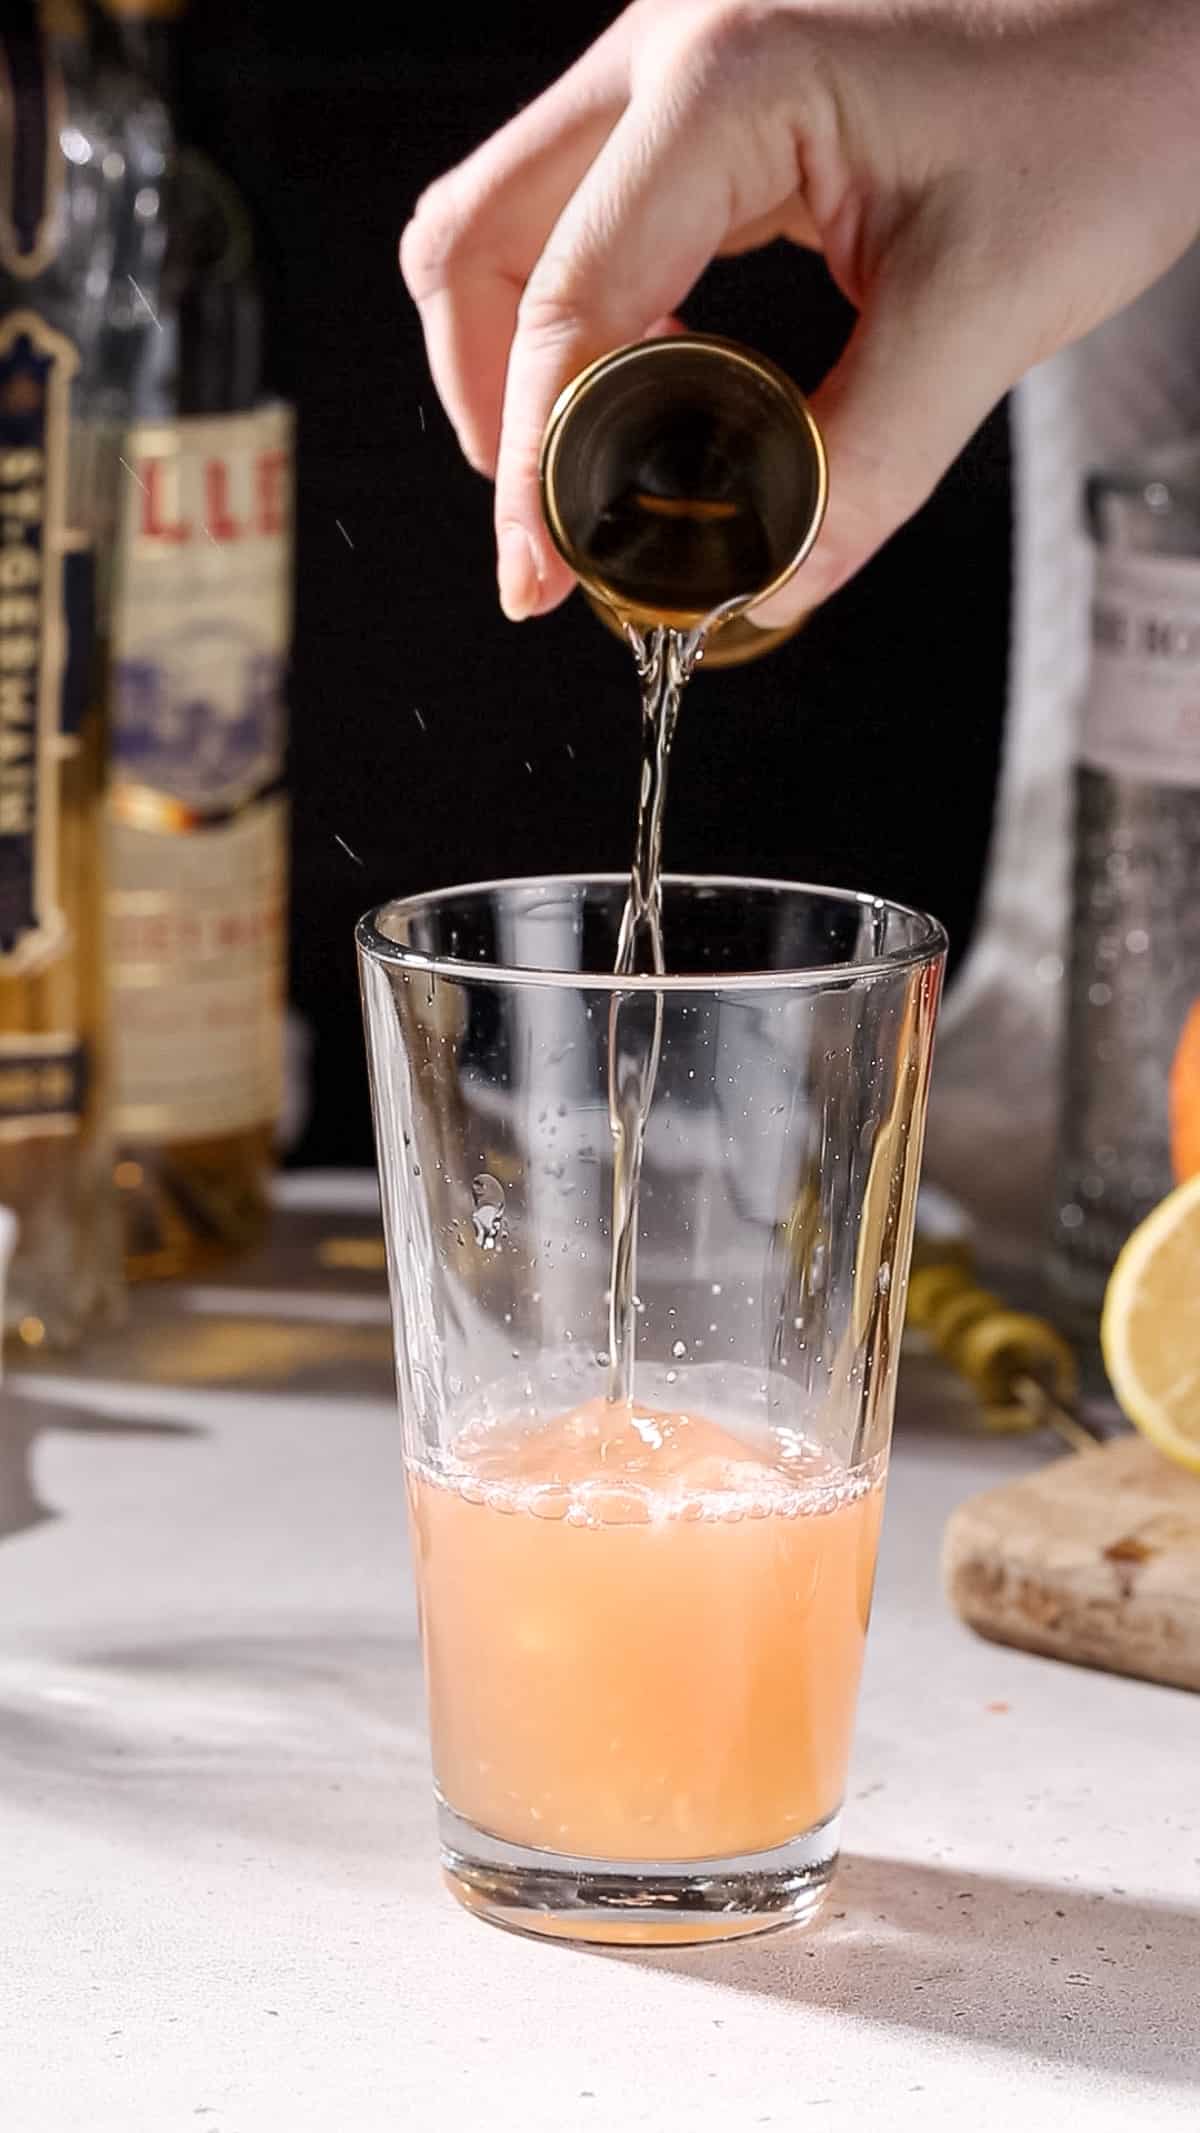 Hand pouring elderflower liqueur into a cocktail shaker.